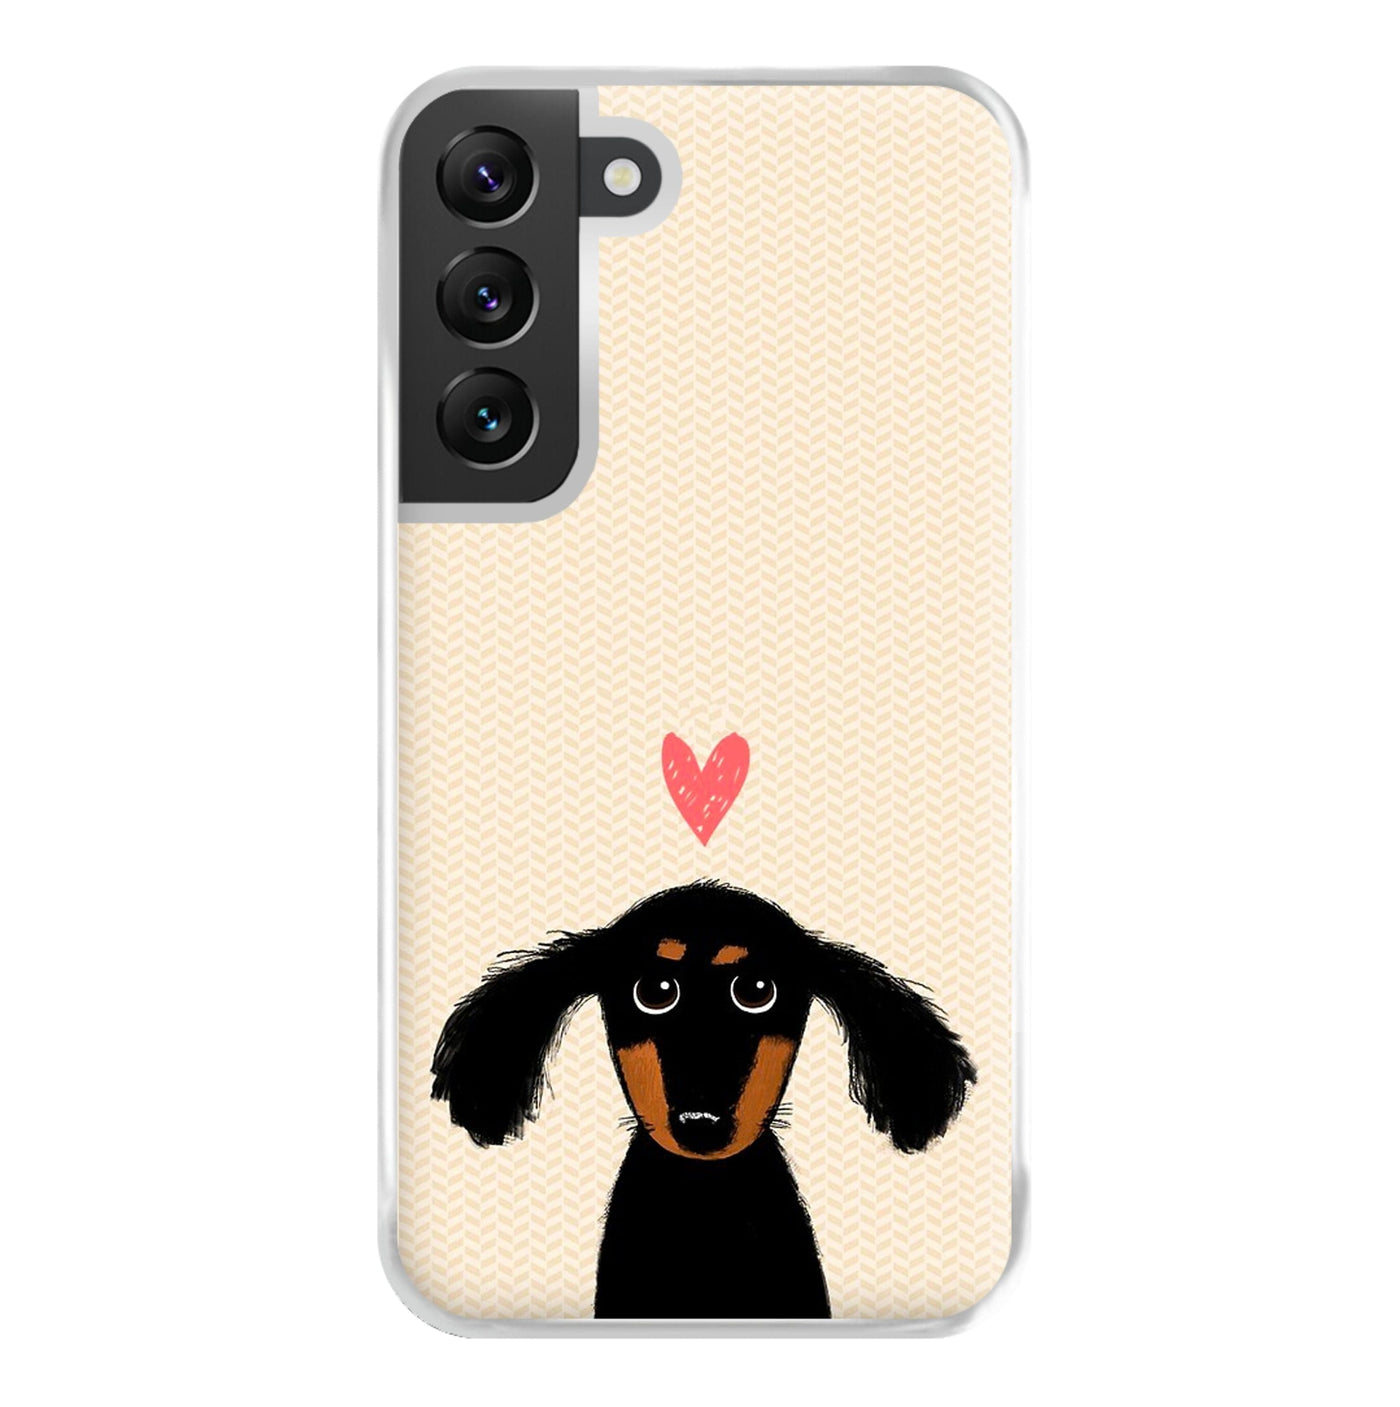 Dachshund Puppy Love Phone Case